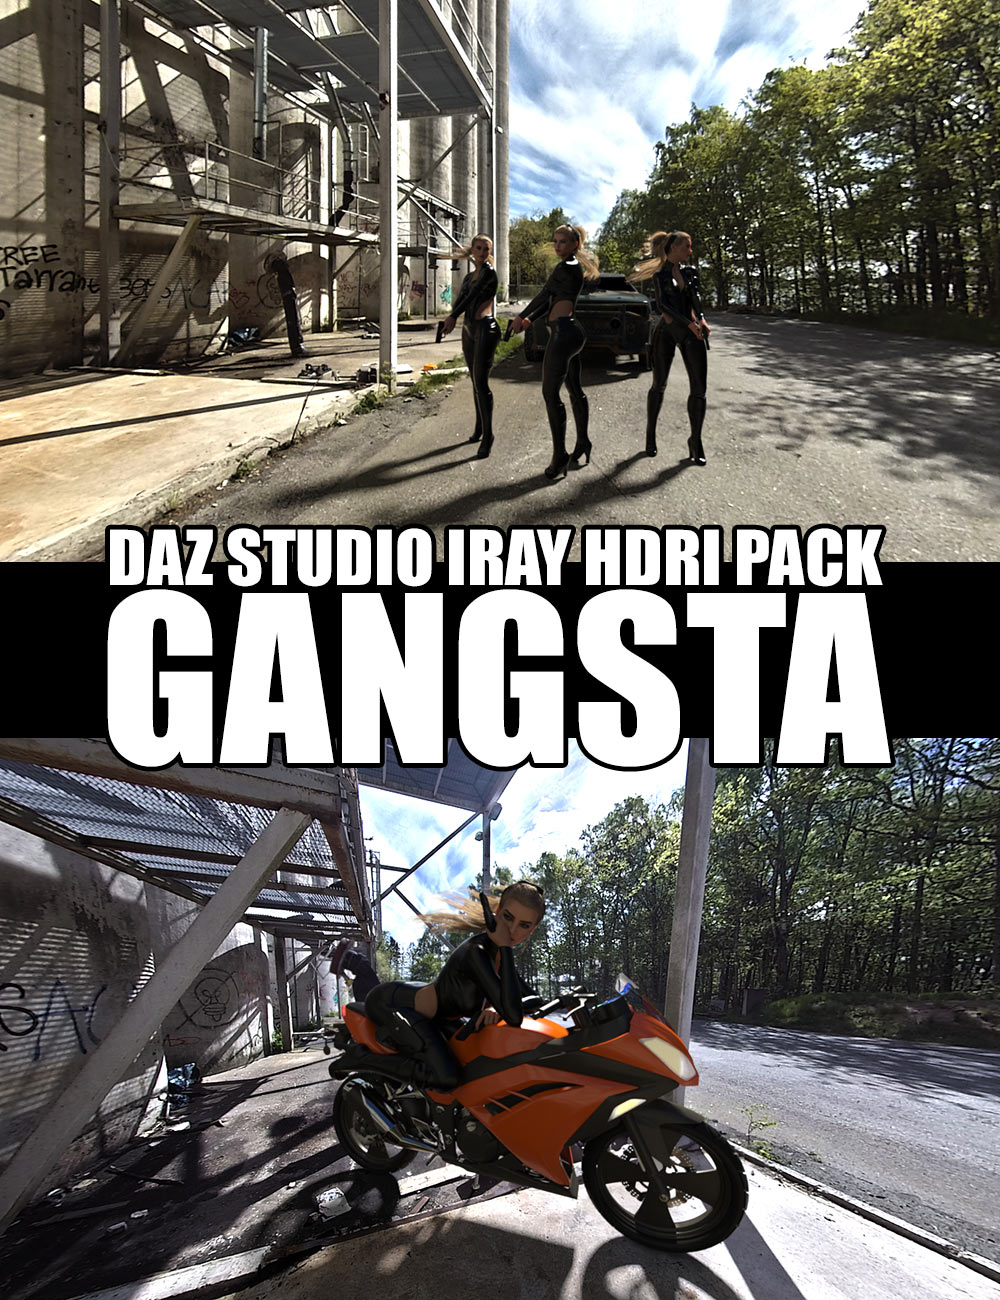 Gangsta - DAZ Studio Iray HDRI Pack by: Dreamlight, 3D Models by Daz 3D